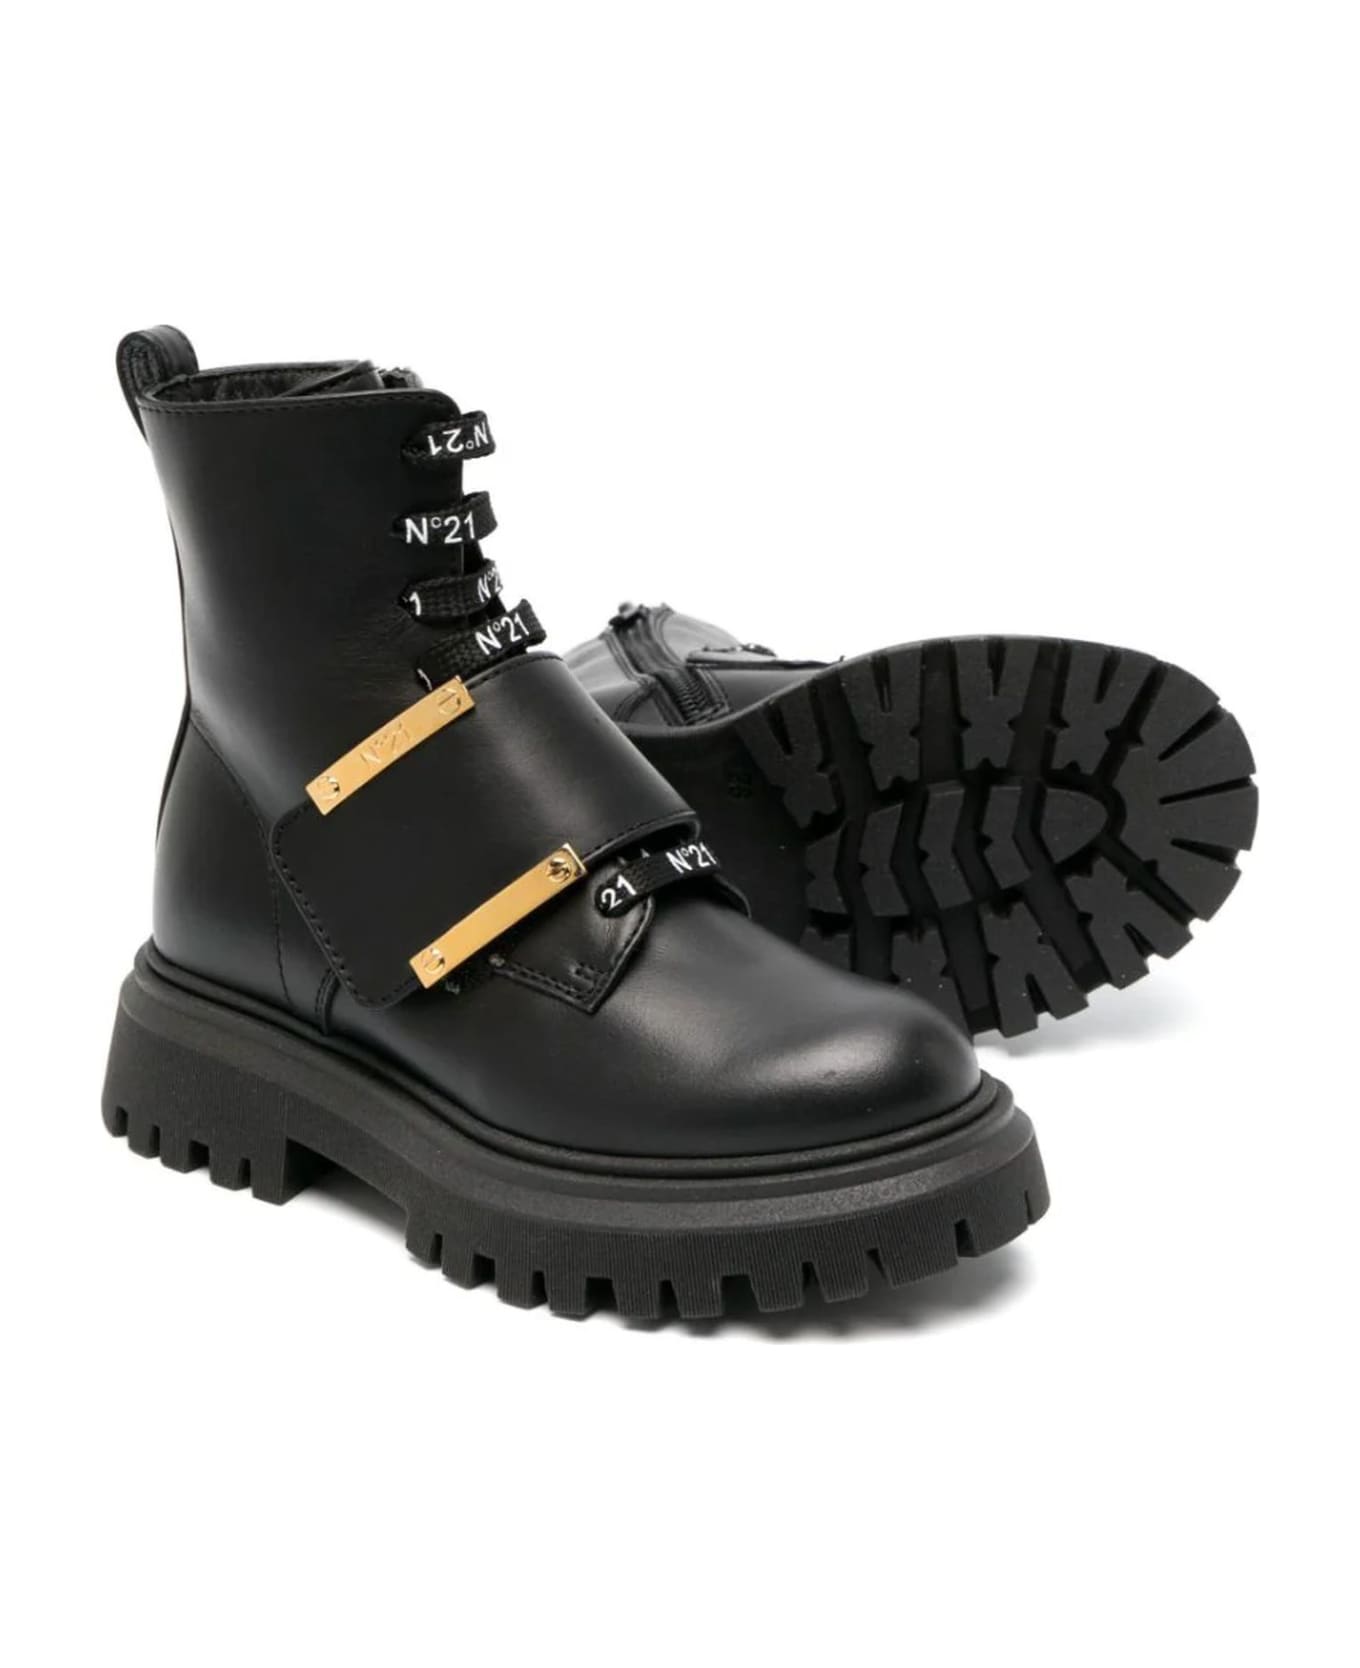 N.21 N°21 Boots Black - Black シューズ